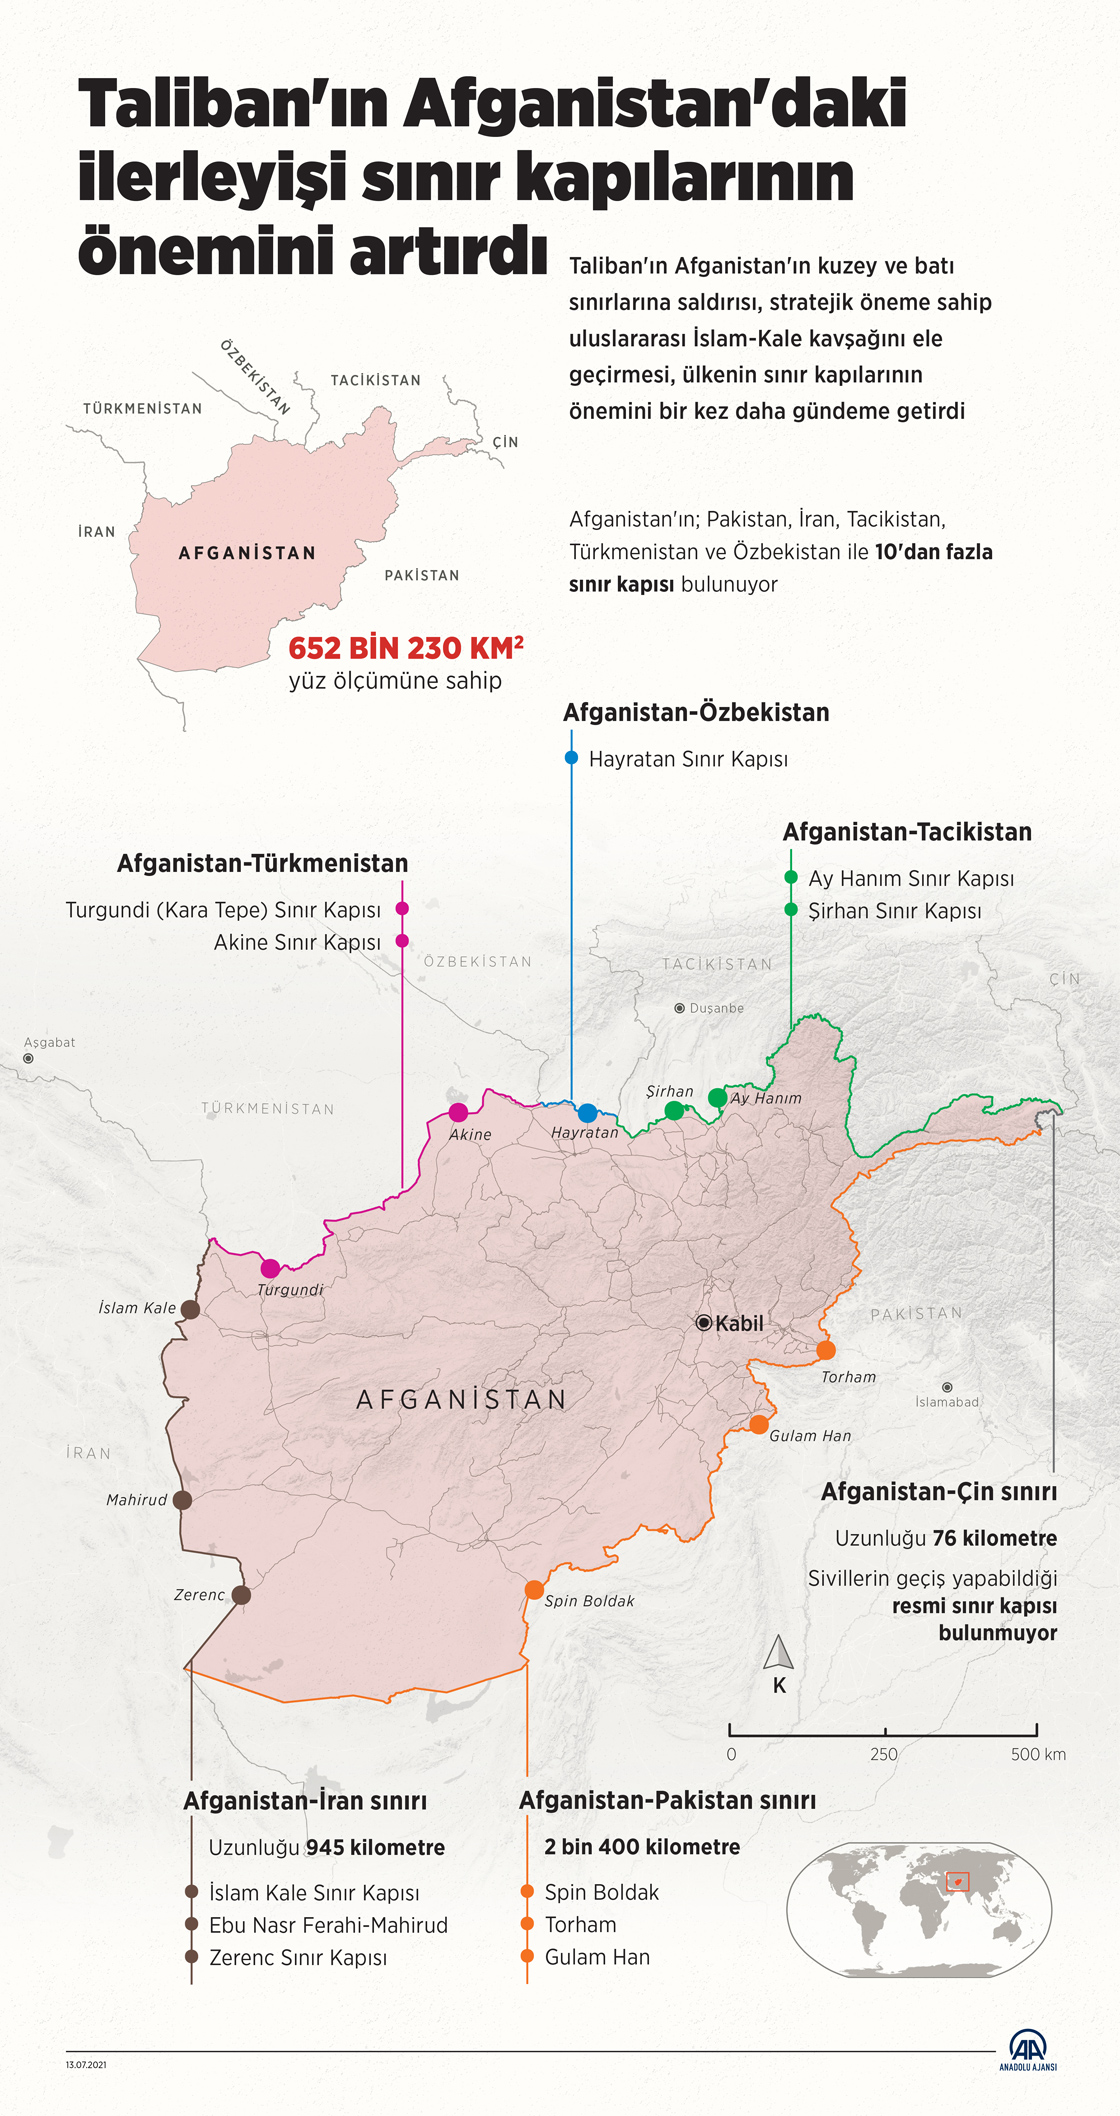 Taliban'ın Afganistan'daki ilerleyişi sınır kapılarının önemini artırdı